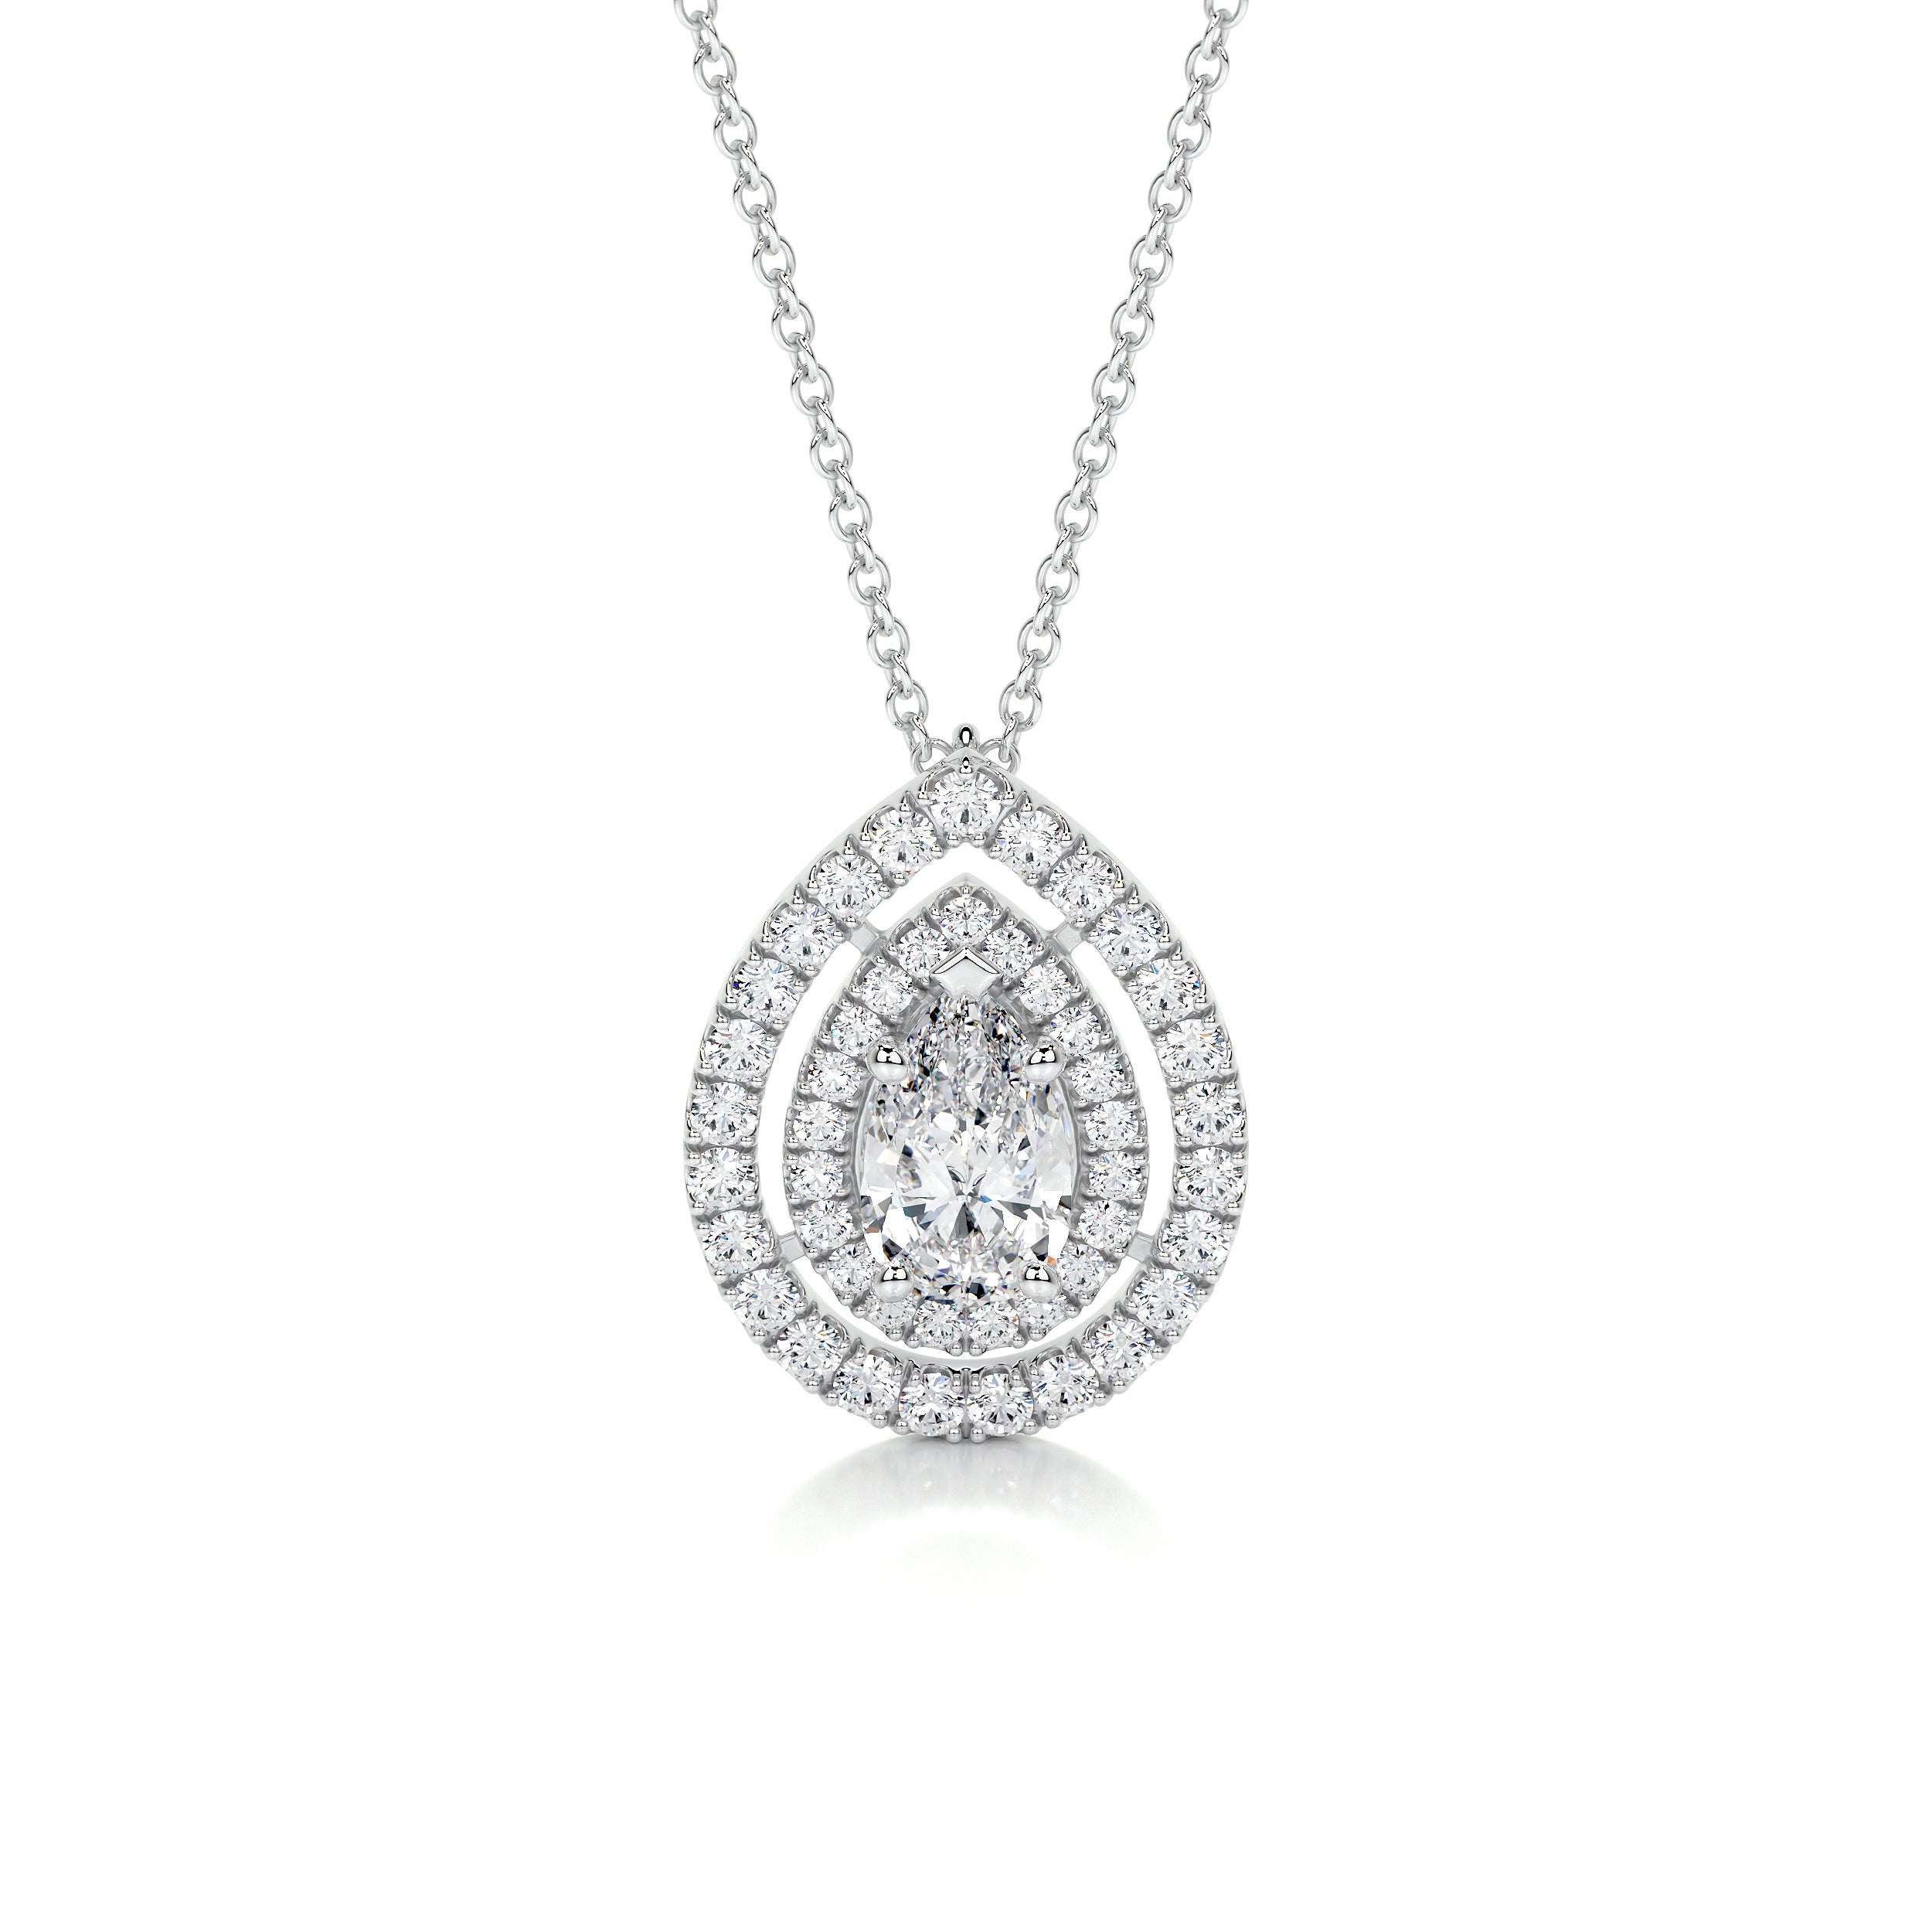 Averi Diamond Pendant   (1.5 Carat) -14K White Gold